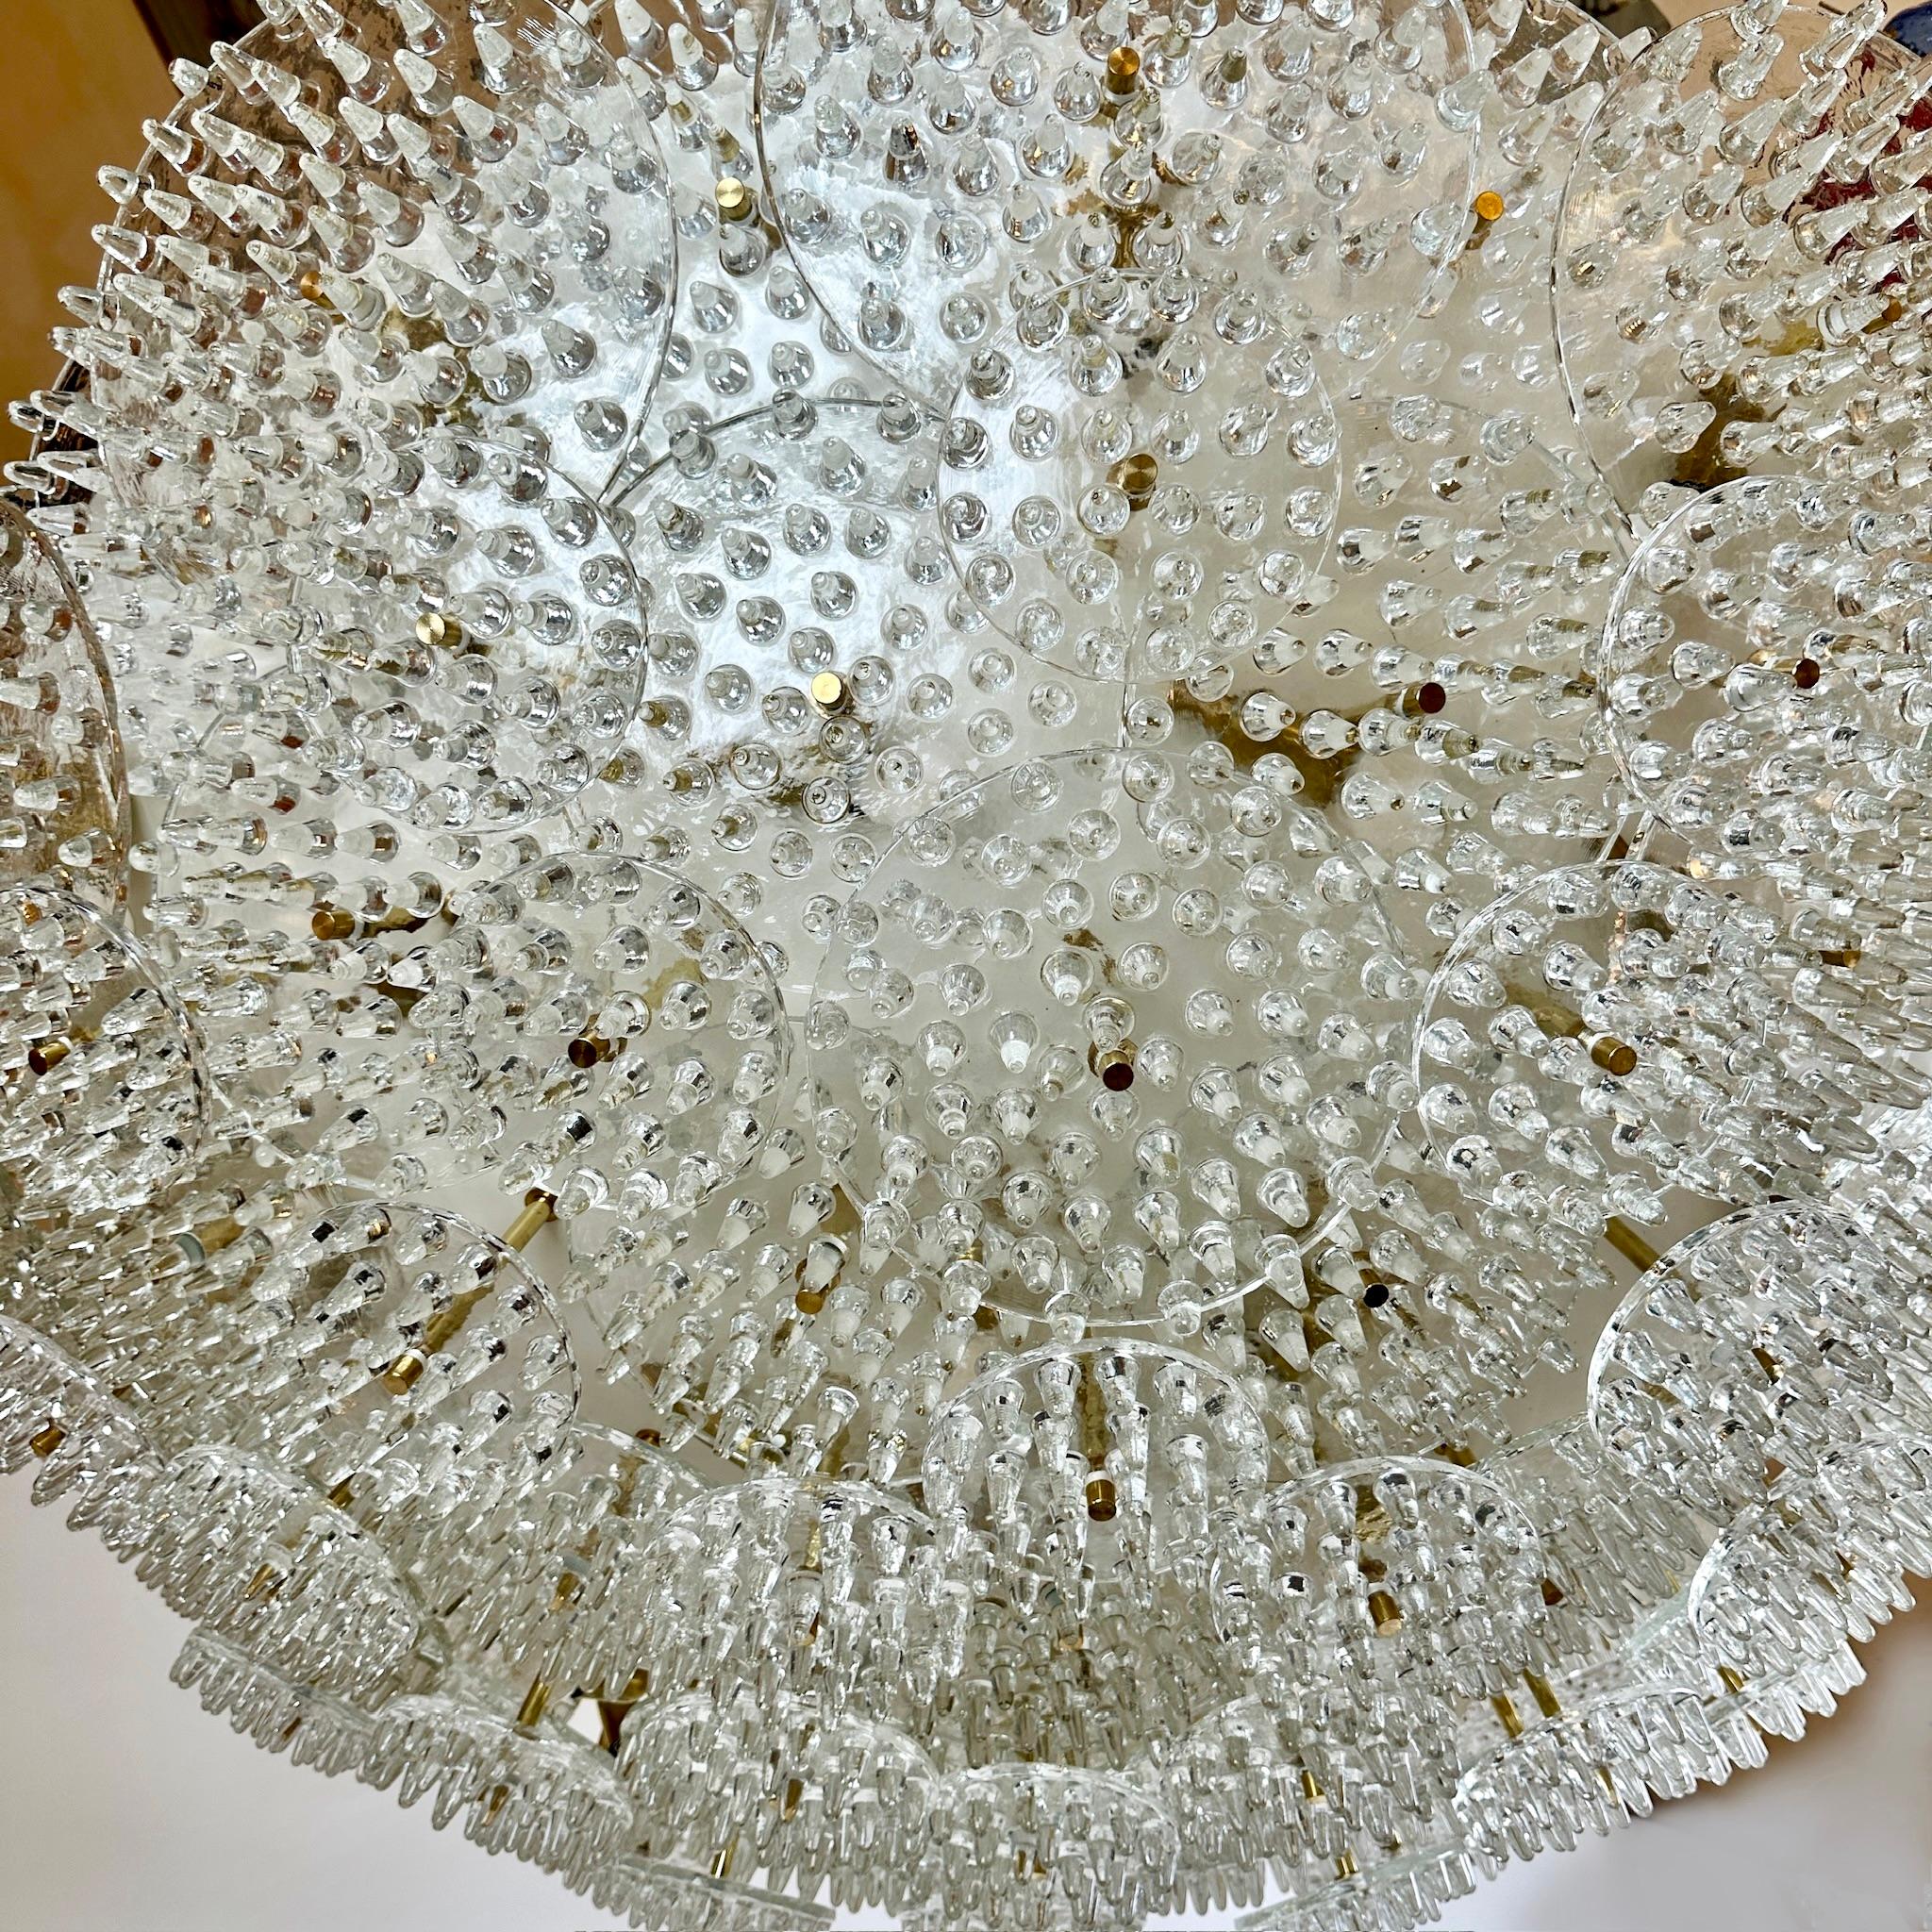 Impressionnant métal blanc et laiton avec trois sortes de disques transparents en verre de Murano pleins de pinacles (taille : 15, 25 & 30 Diam. cm.) encastré / lustre.
Recommandé 31 ampoules E14 Warm.
Poids approximatif : 180 Kg. 